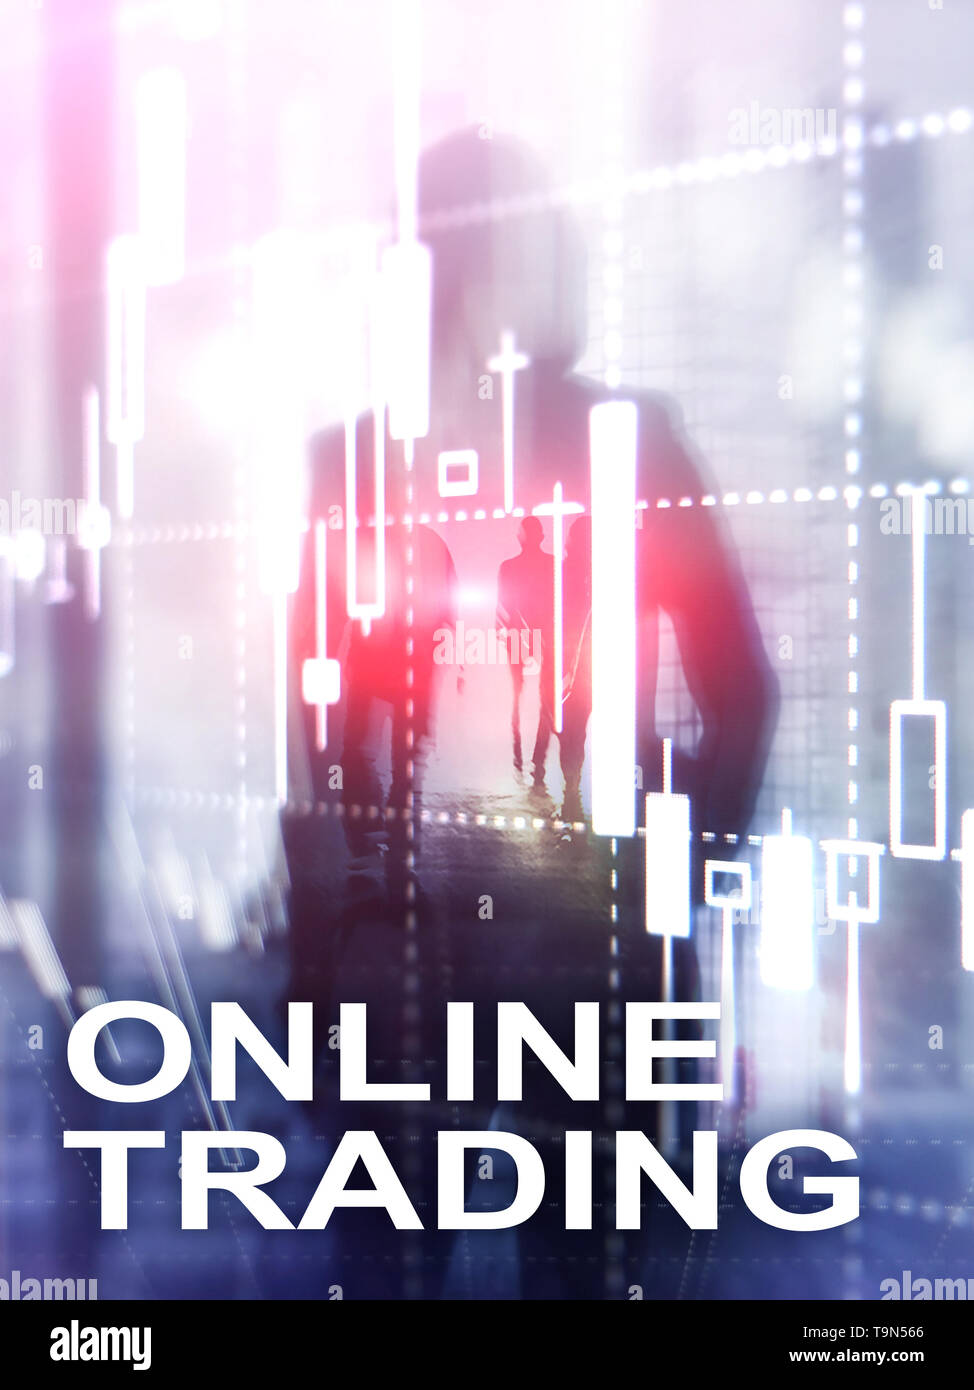 Online Trading, FOREX, Investment Konzept auf unscharfen Business center Hintergrund. Abstrakte Cover Design vertikalen Format. Stockfoto